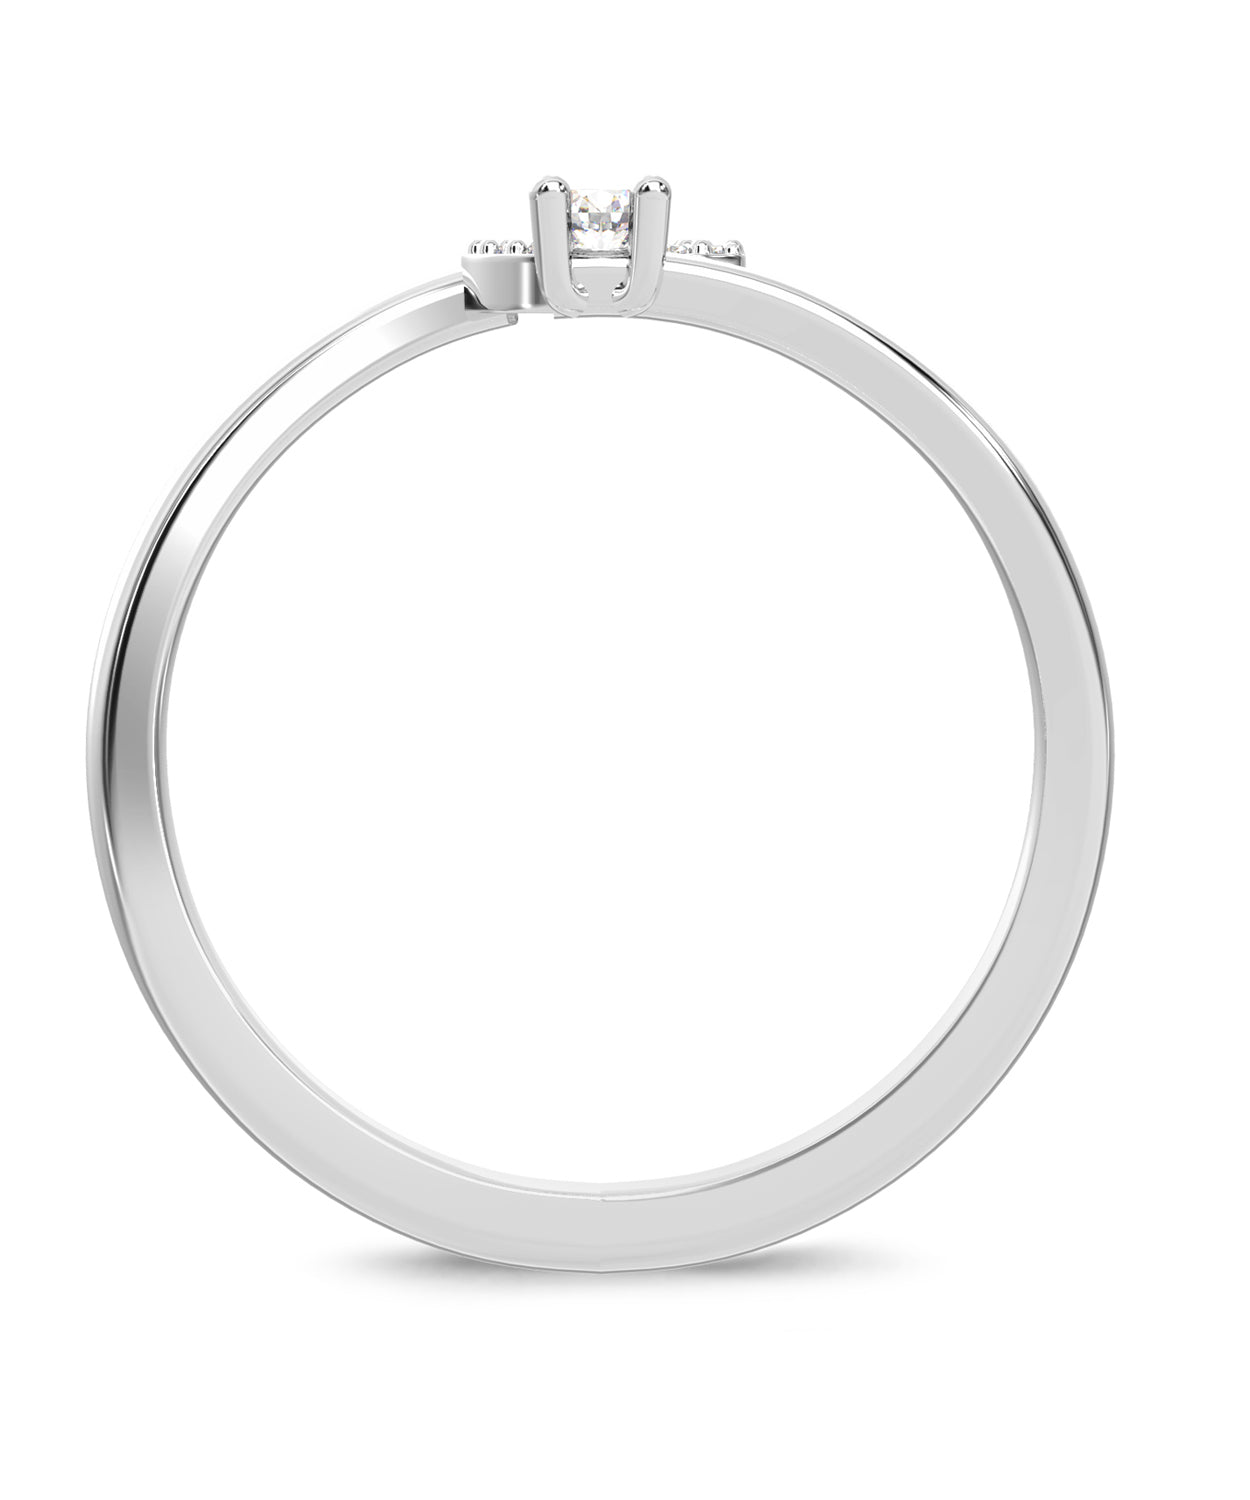 ESEMCO Diamond 18k White Gold Letter G Initial Open Ring View 2